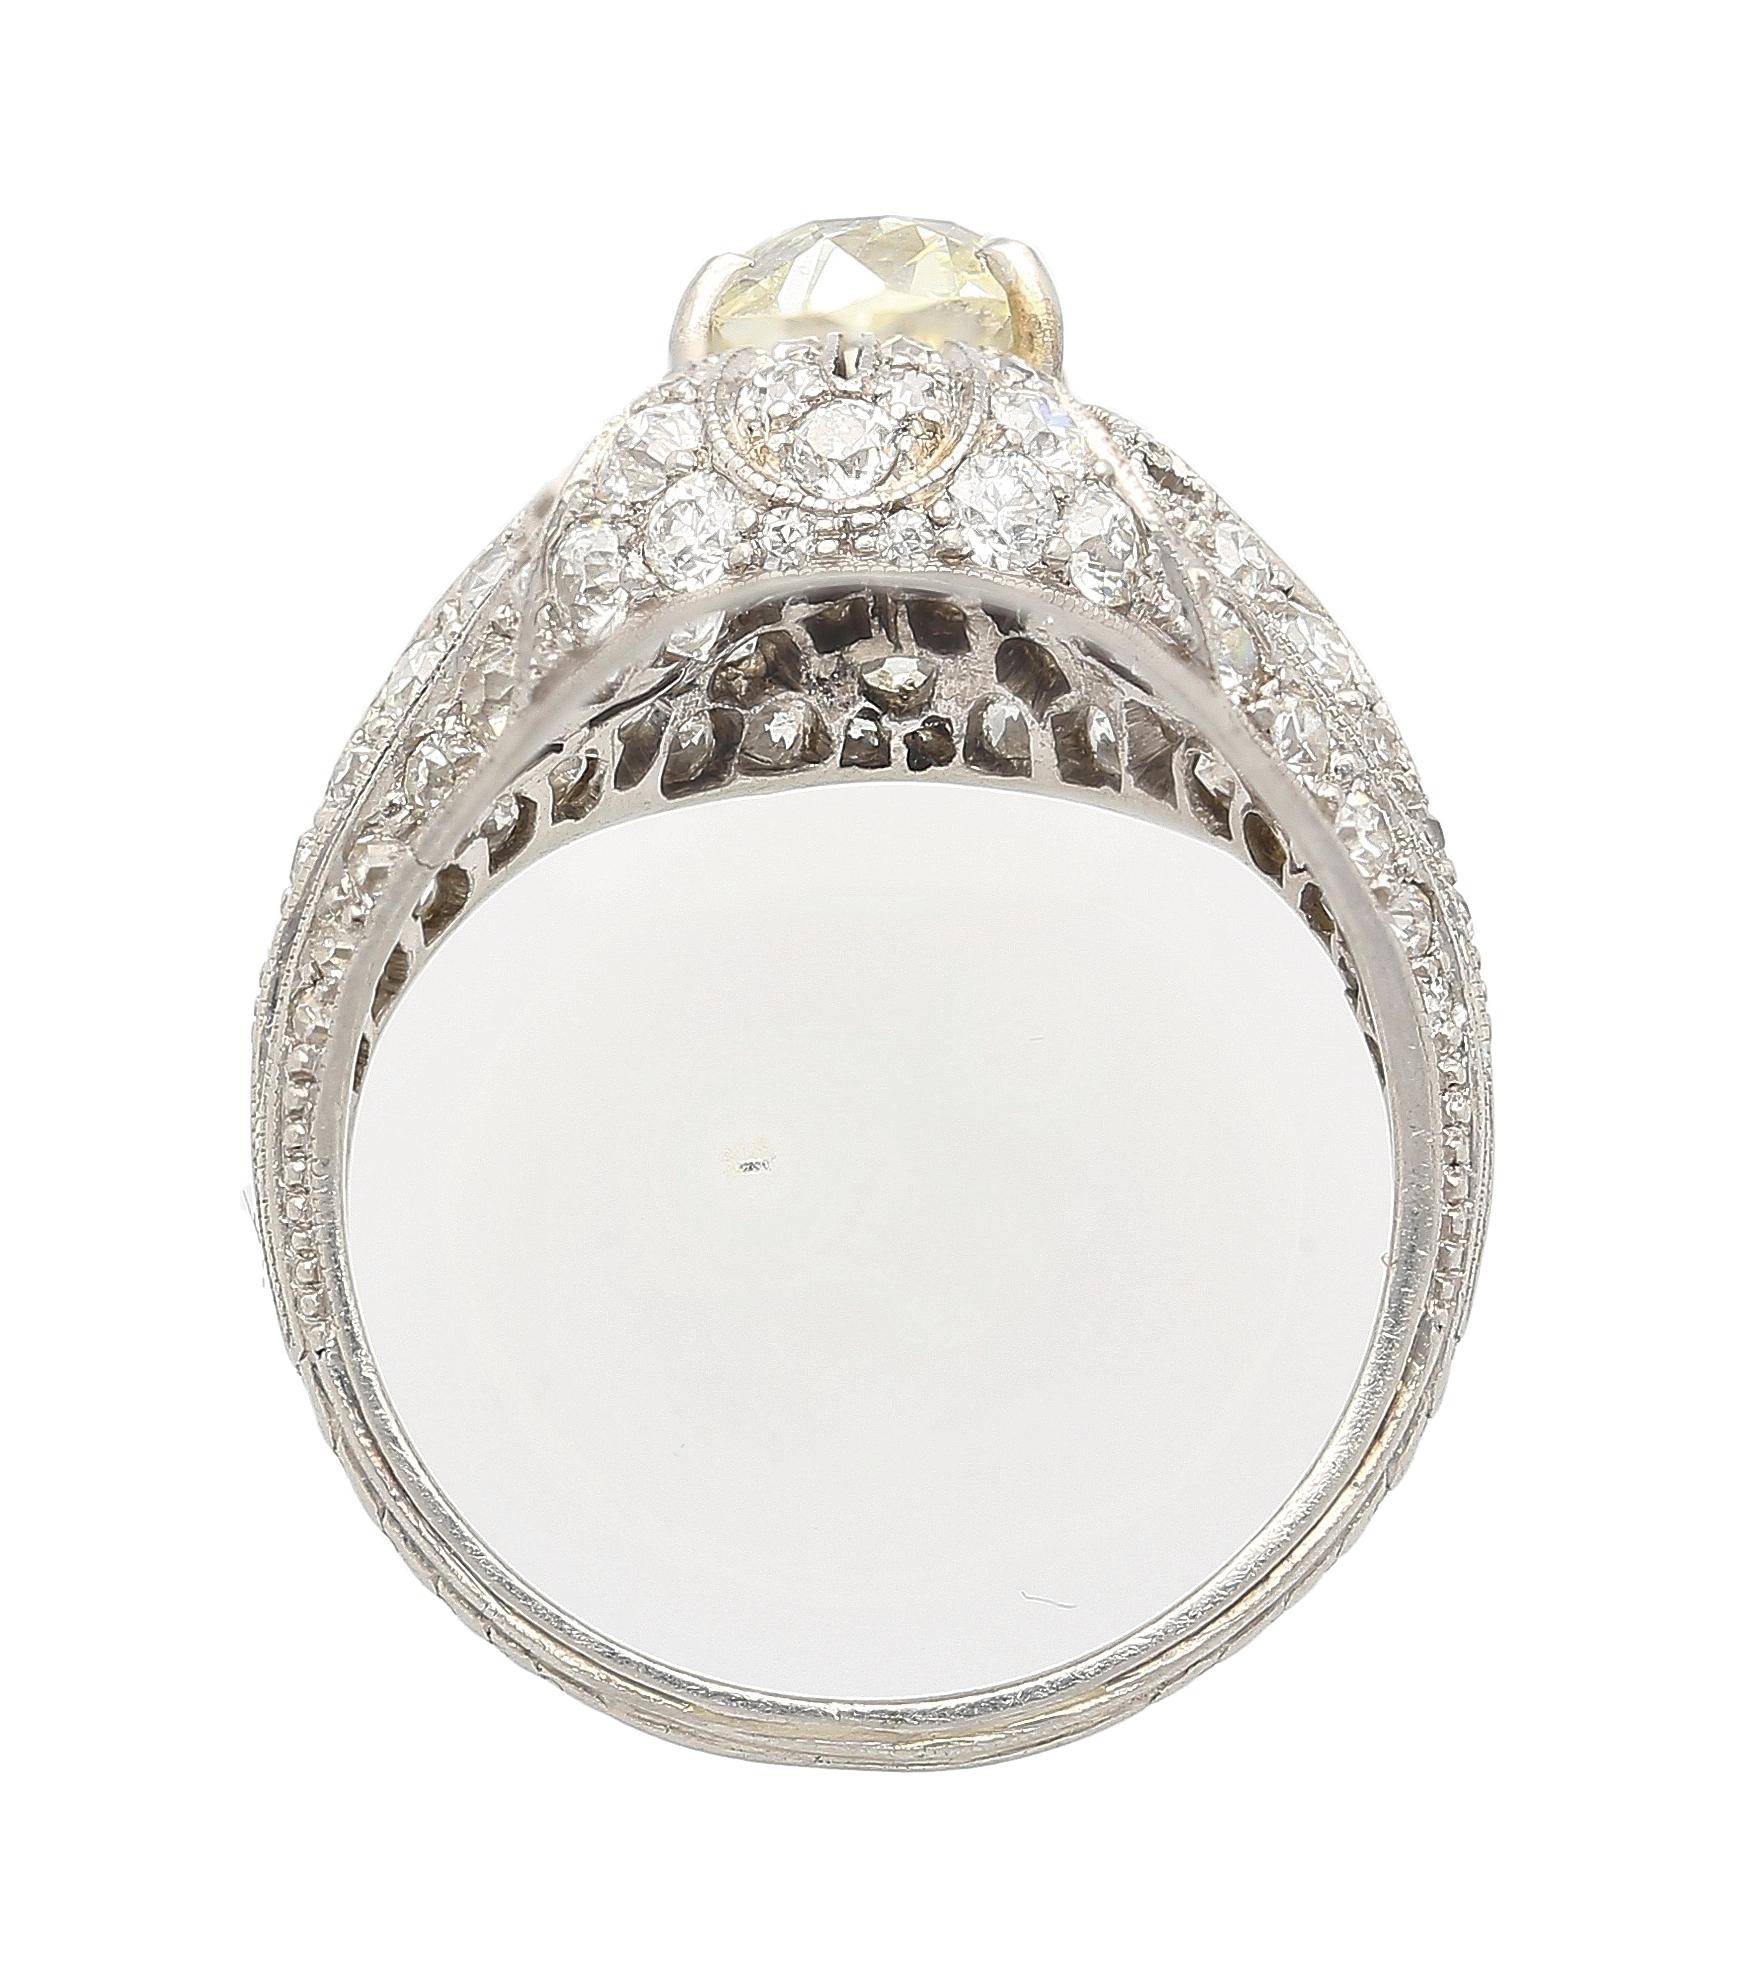 Art Deco 1.55 Carat Old European Cut Diamond Milgrain Filigree Platinum Ring For Sale 2